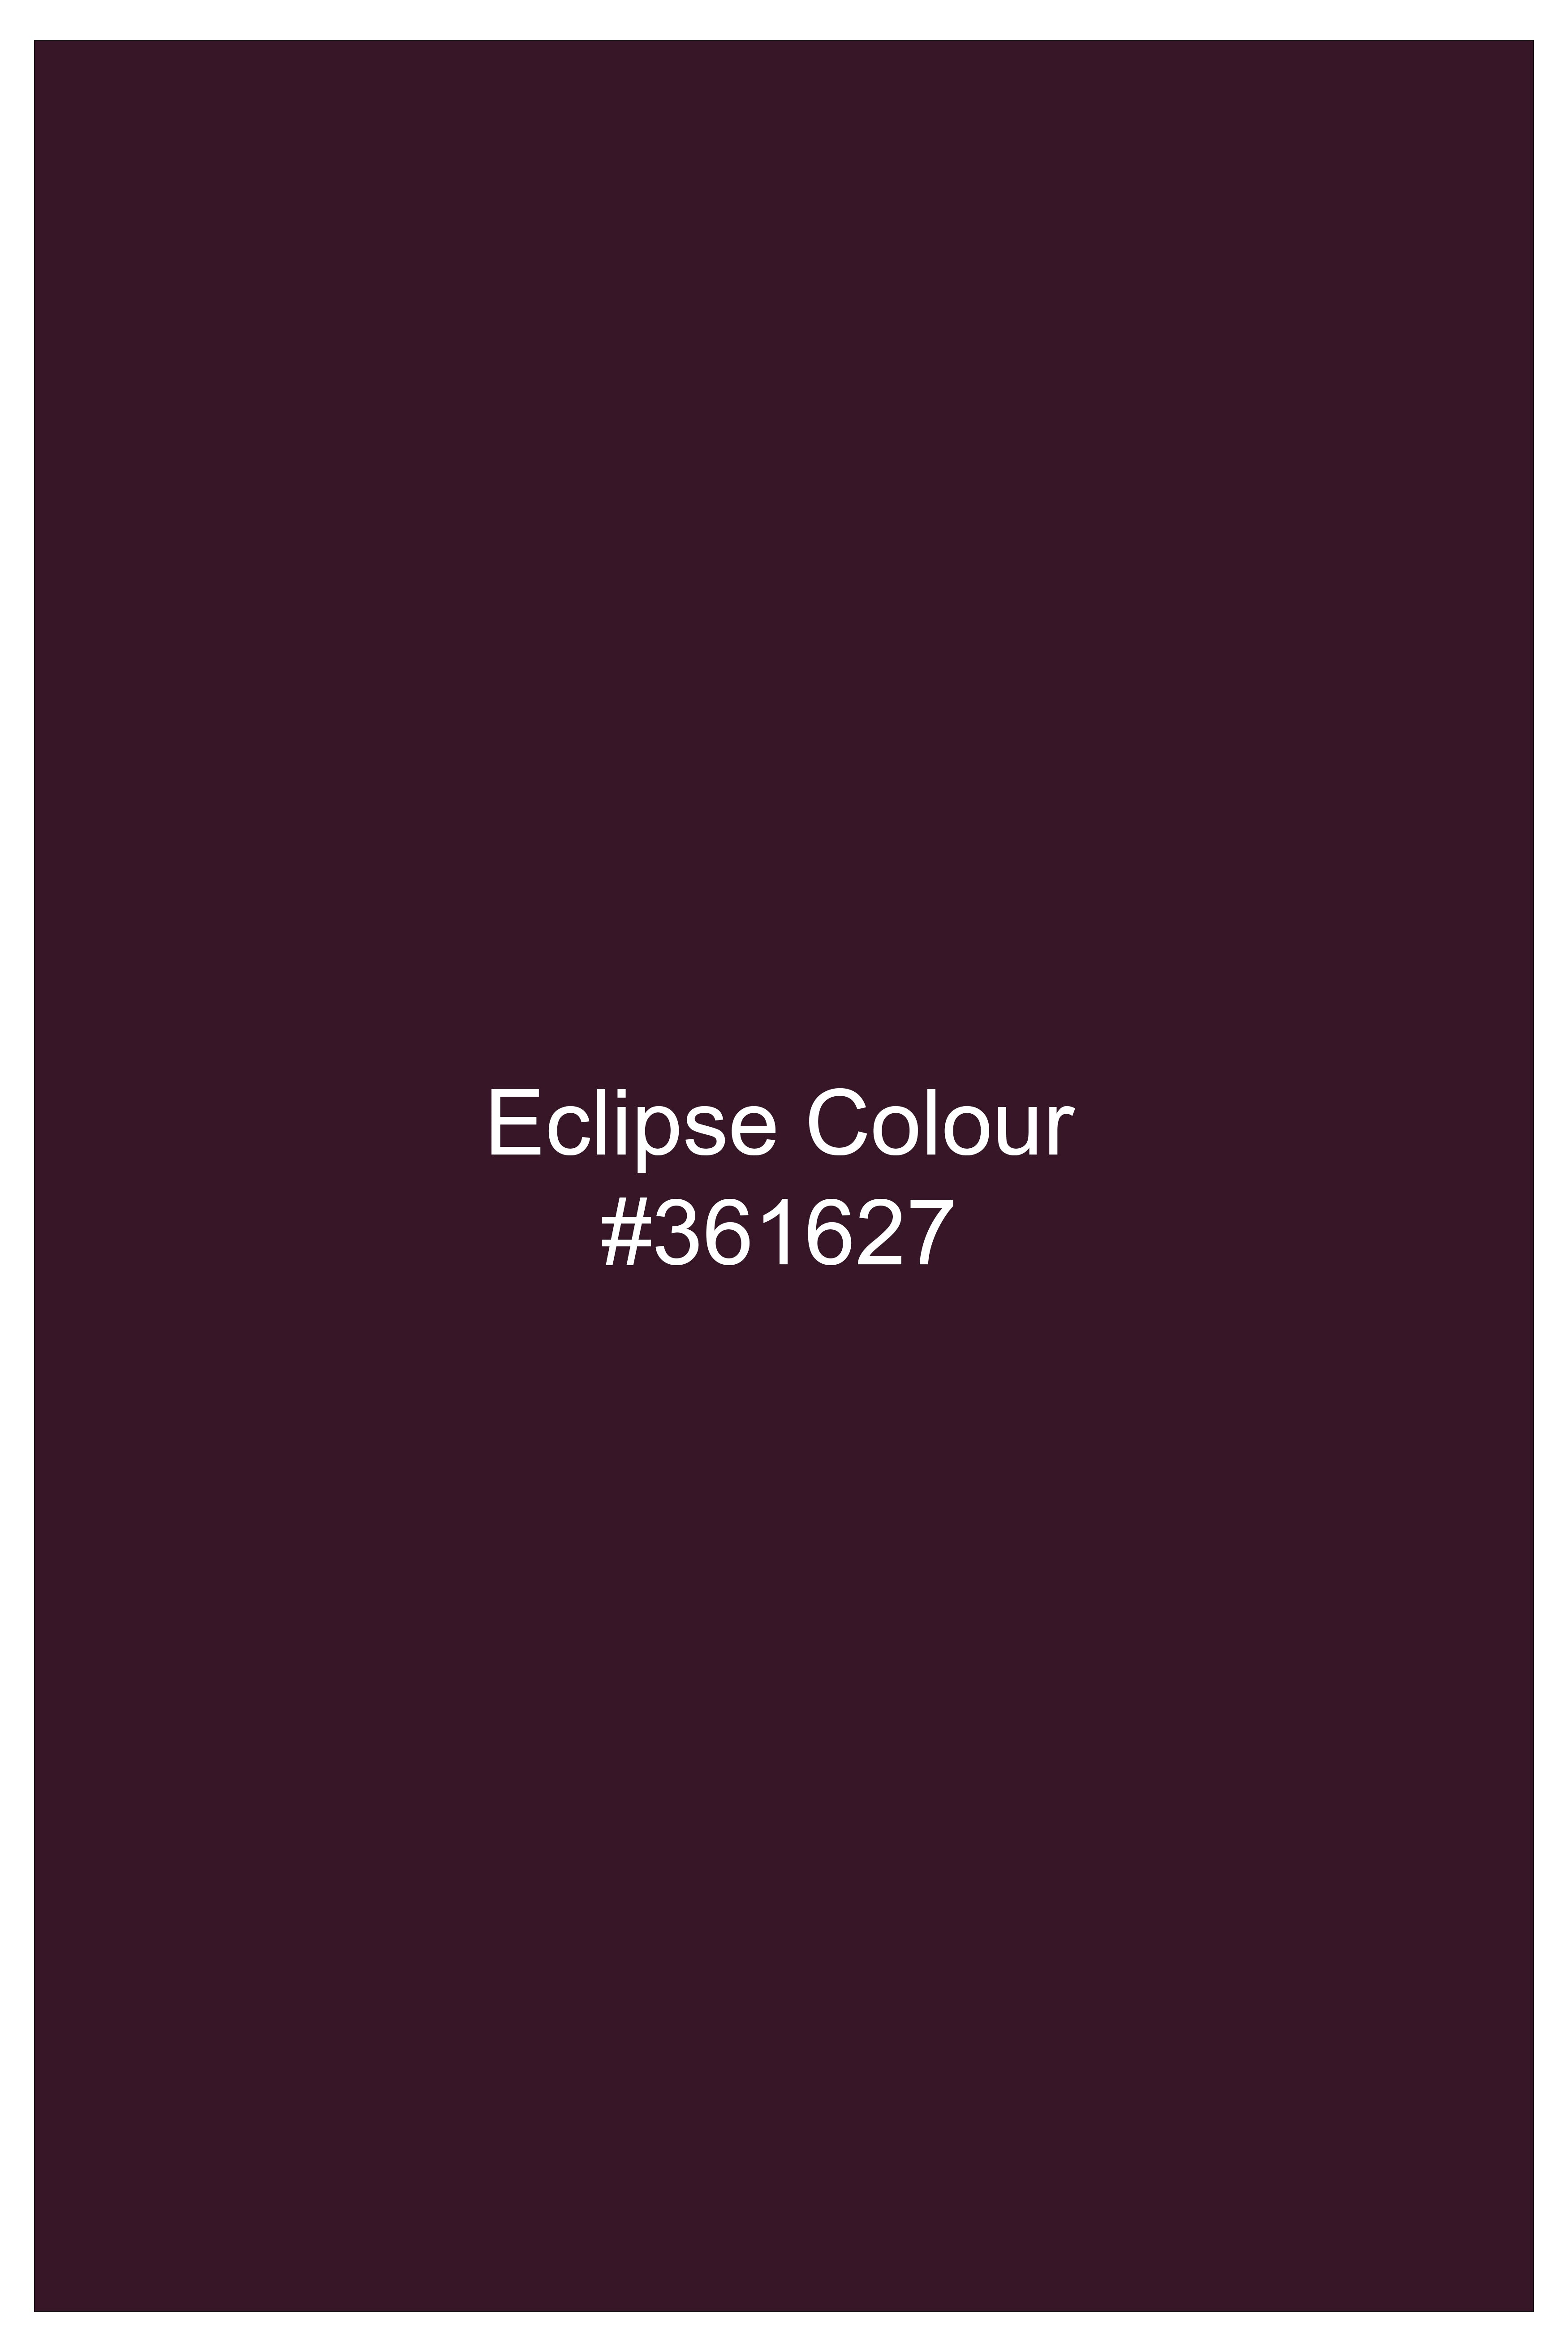 Eclipse Wine Plaid Bandhgala Suit